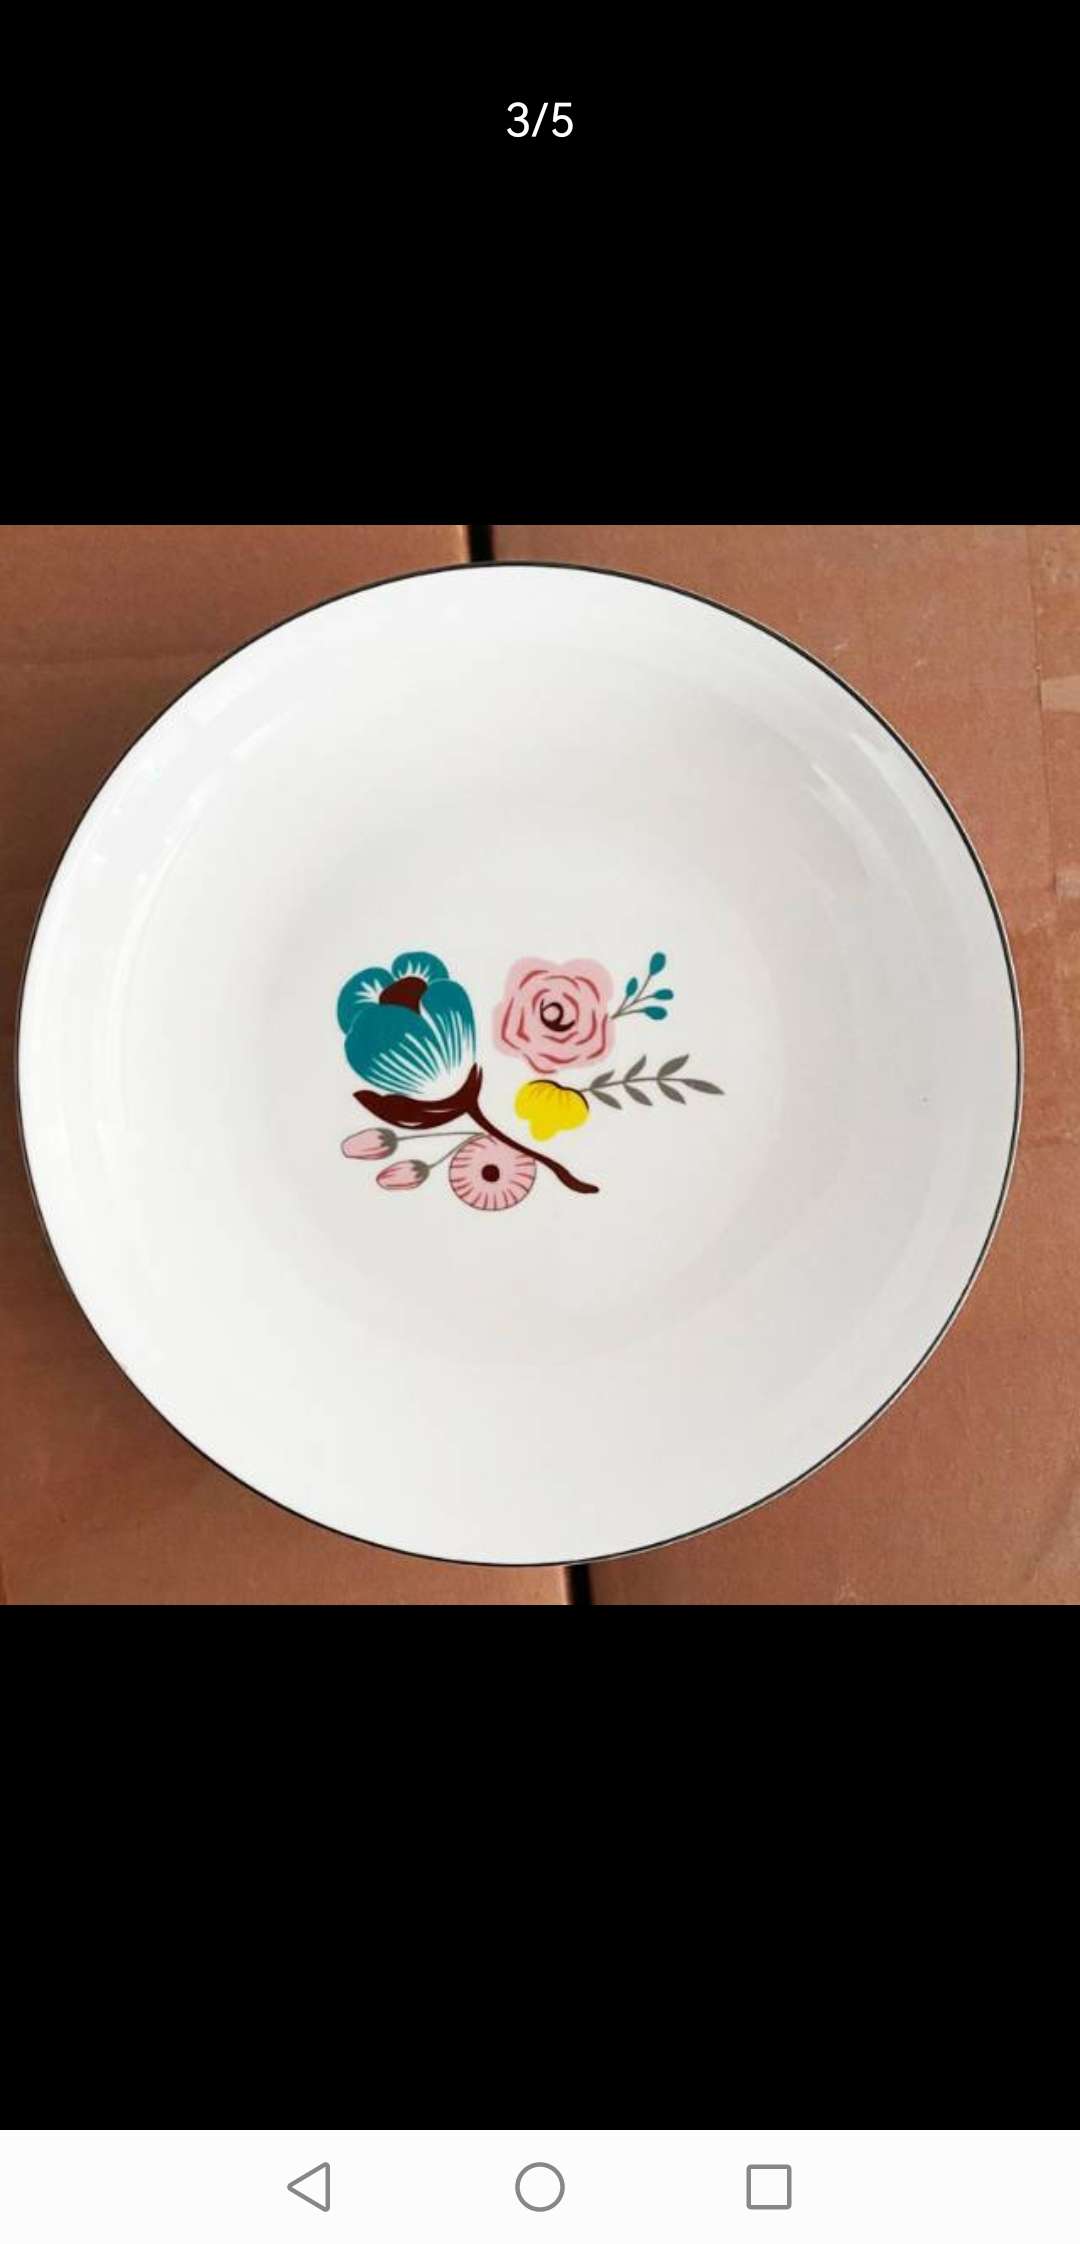 日用百货骨瓷餐具套装 陶瓷碗碟盘子组合 精致餐具套装 高档陶瓷餐具套装 家用餐具优选碗碟盘子图